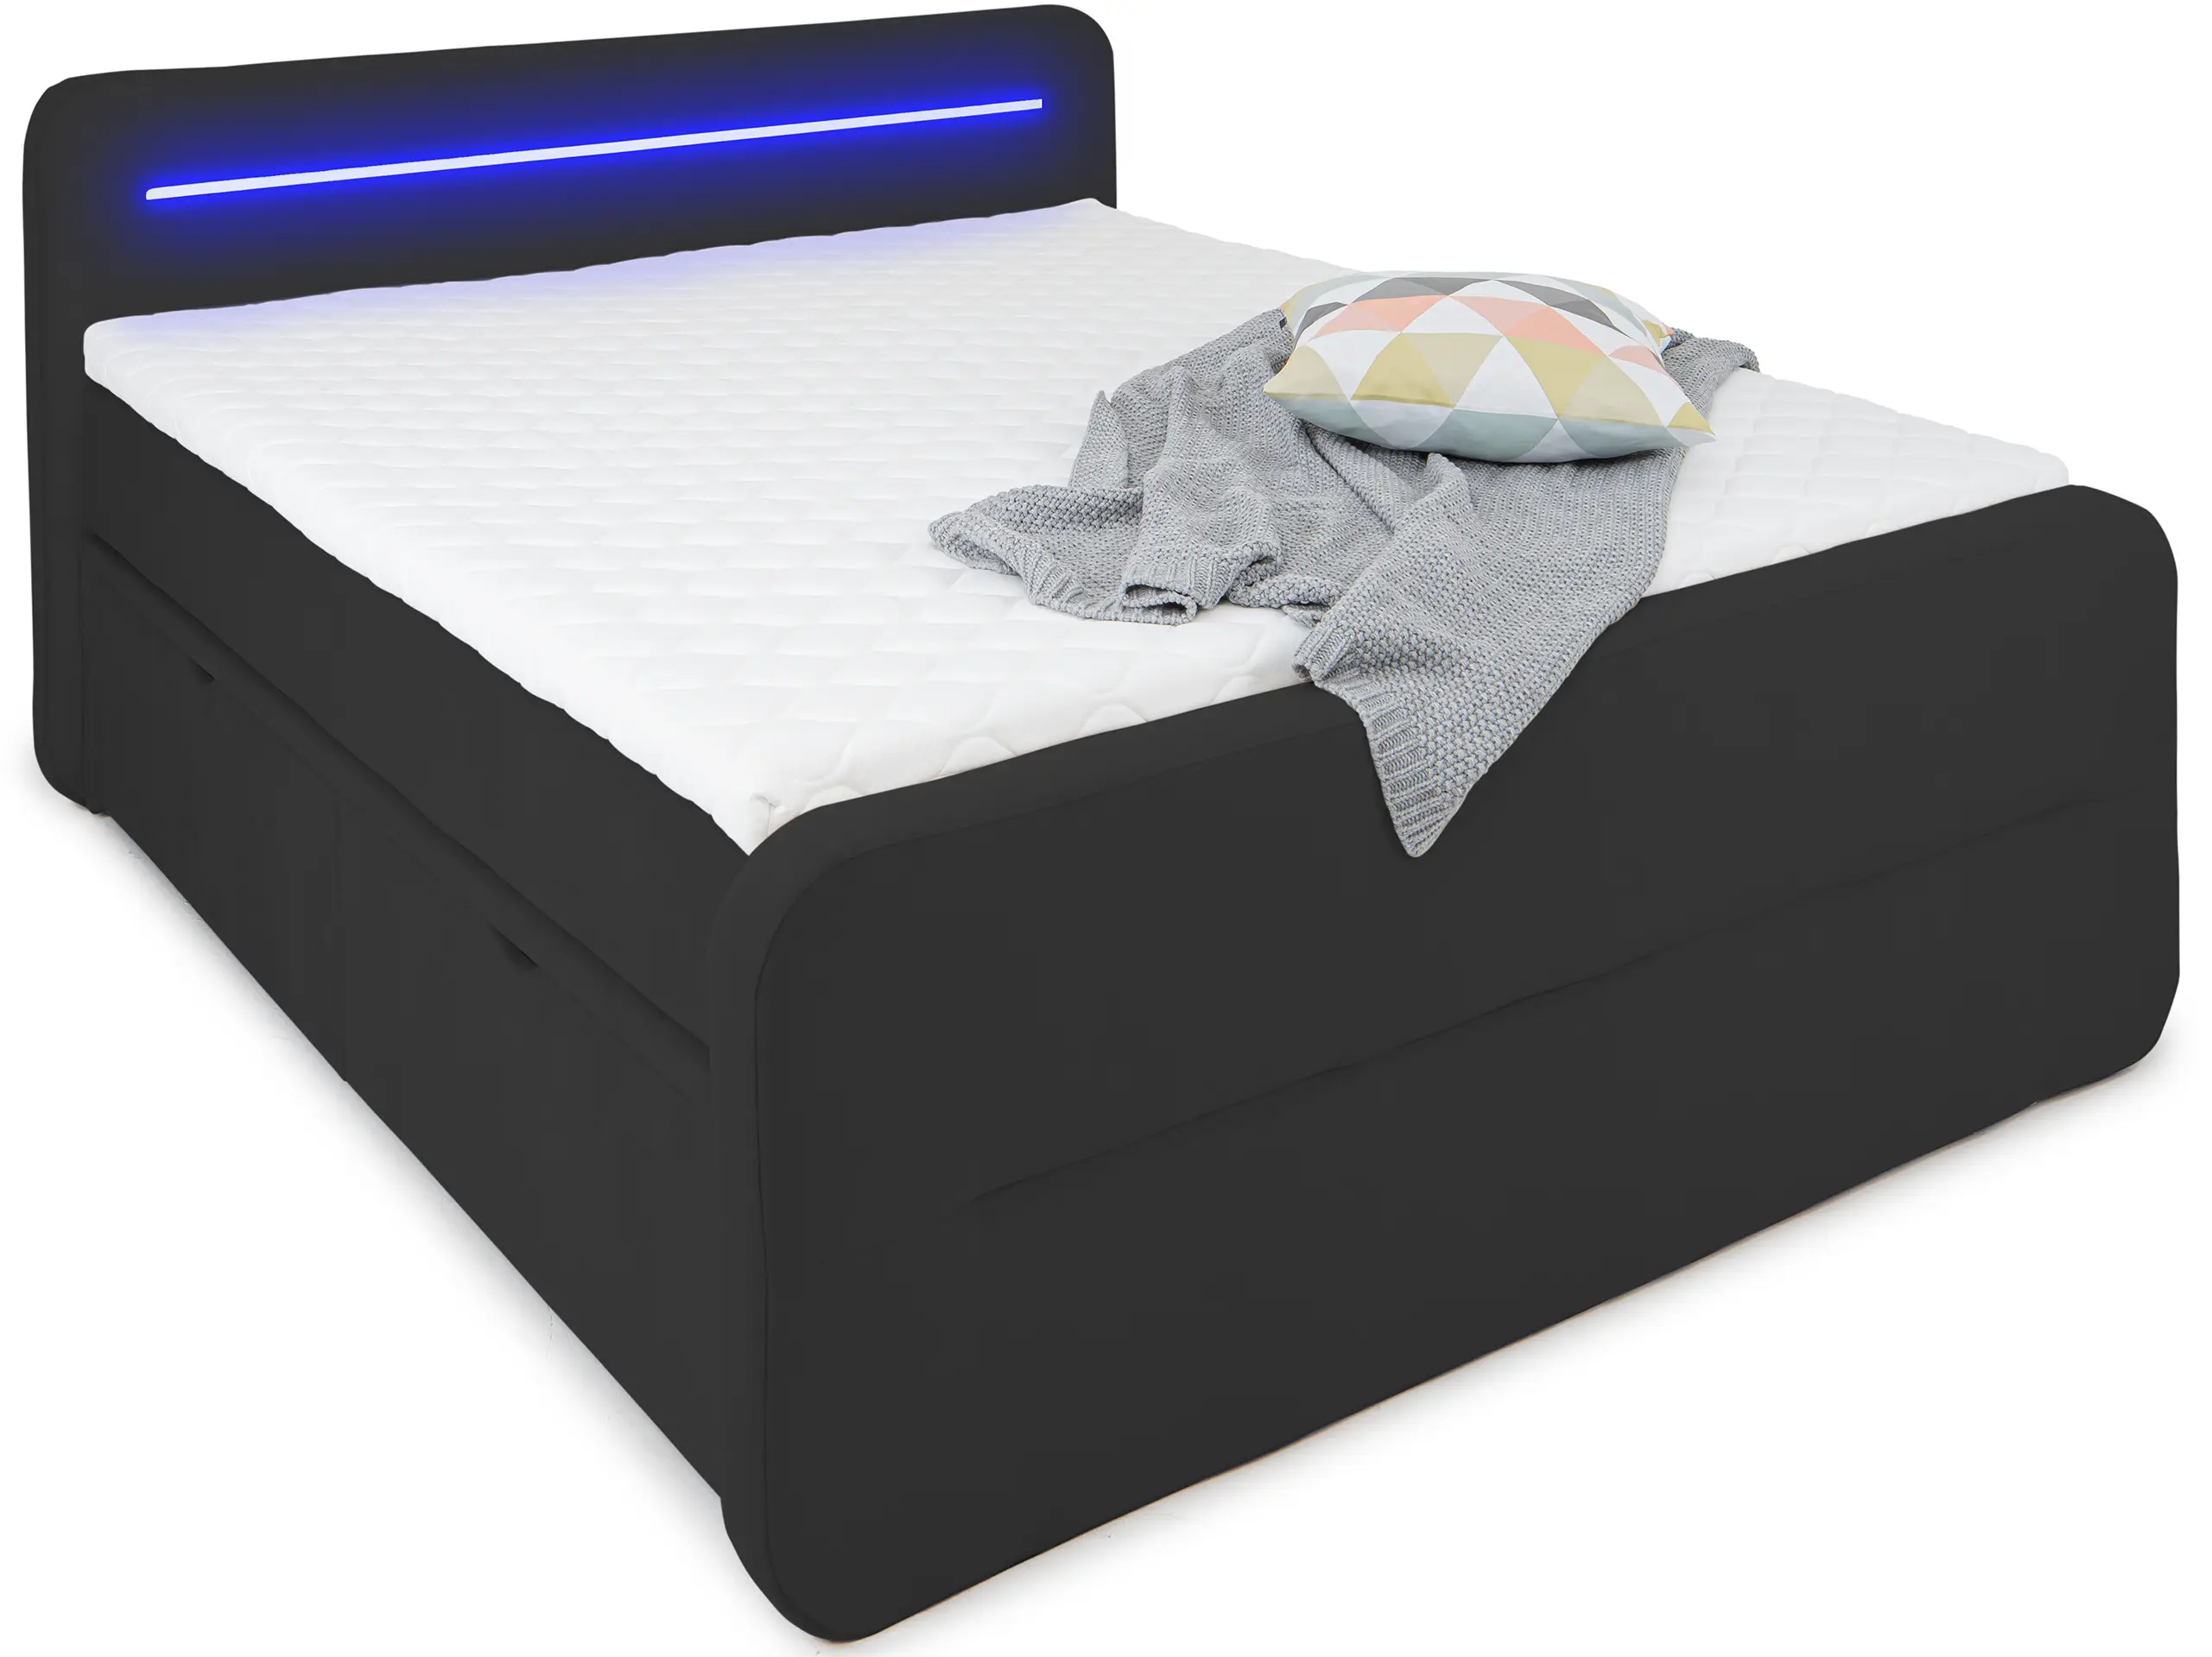 Bett Chicago mit LED-Beleuchtung und USB